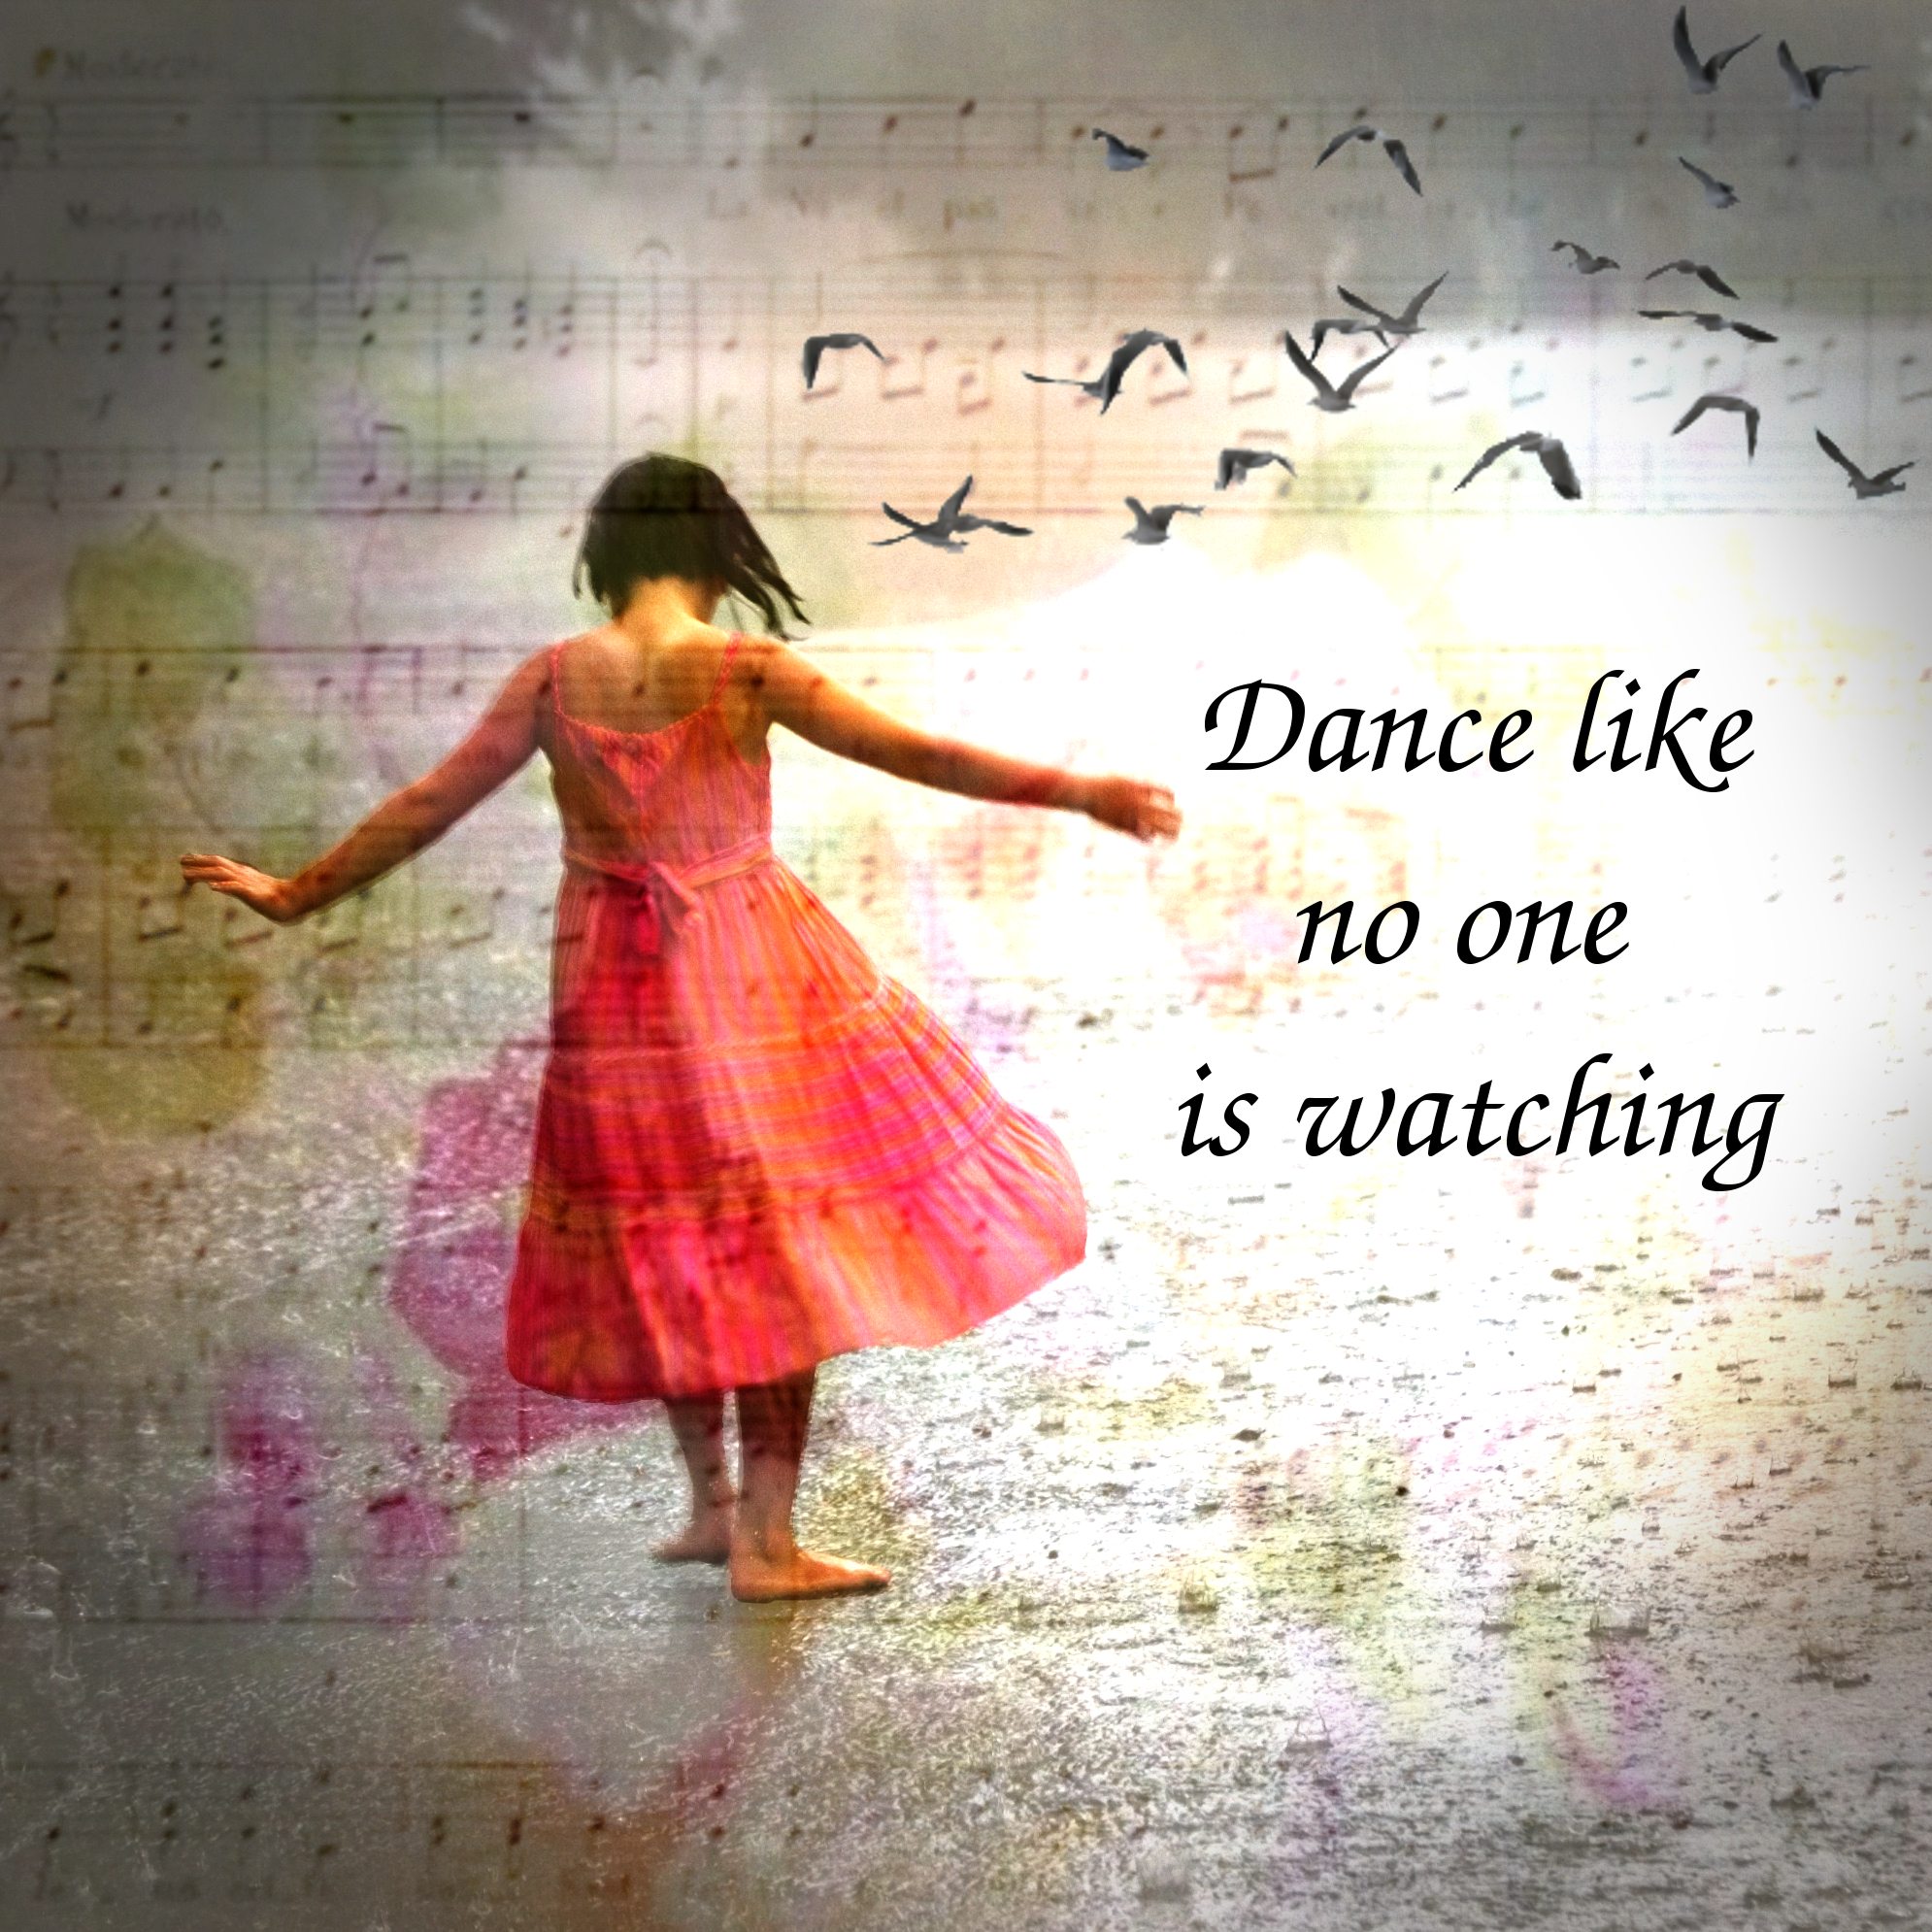 Танец про жизнь. Цитаты про танцы. Dance цитаты. Танцы это жизнь цитаты. Танцевать афоризмы.